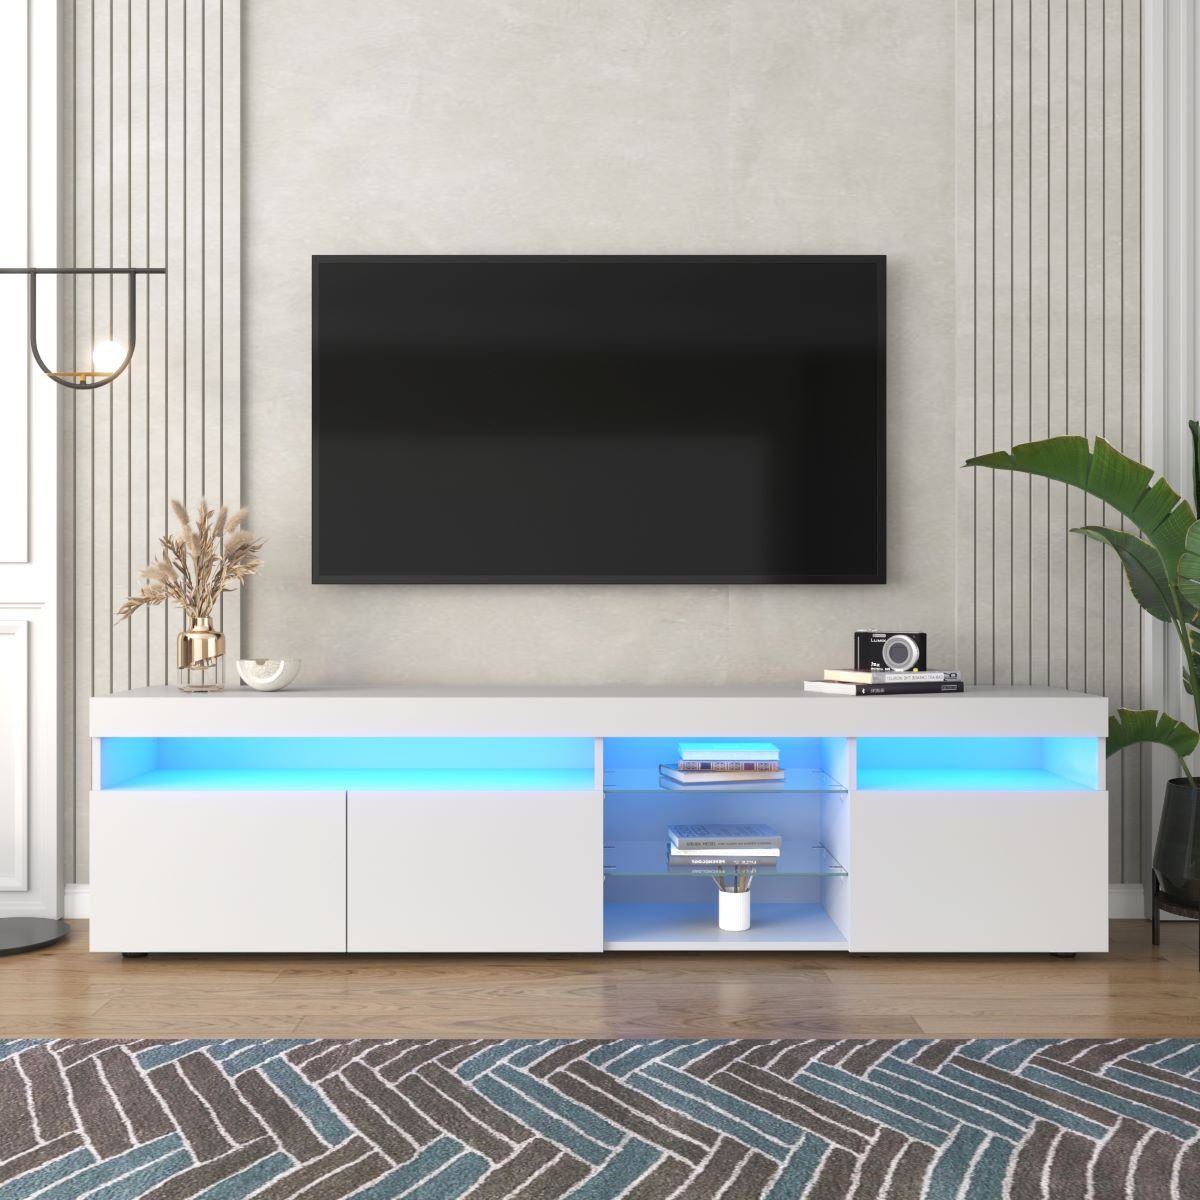 Fangqi TV-Schrank 180x35x45cm TV-Schrank, mit vierfarbigen LED-Leuchten,8 Stauräume (maximal belastbar 30kg) Weiß